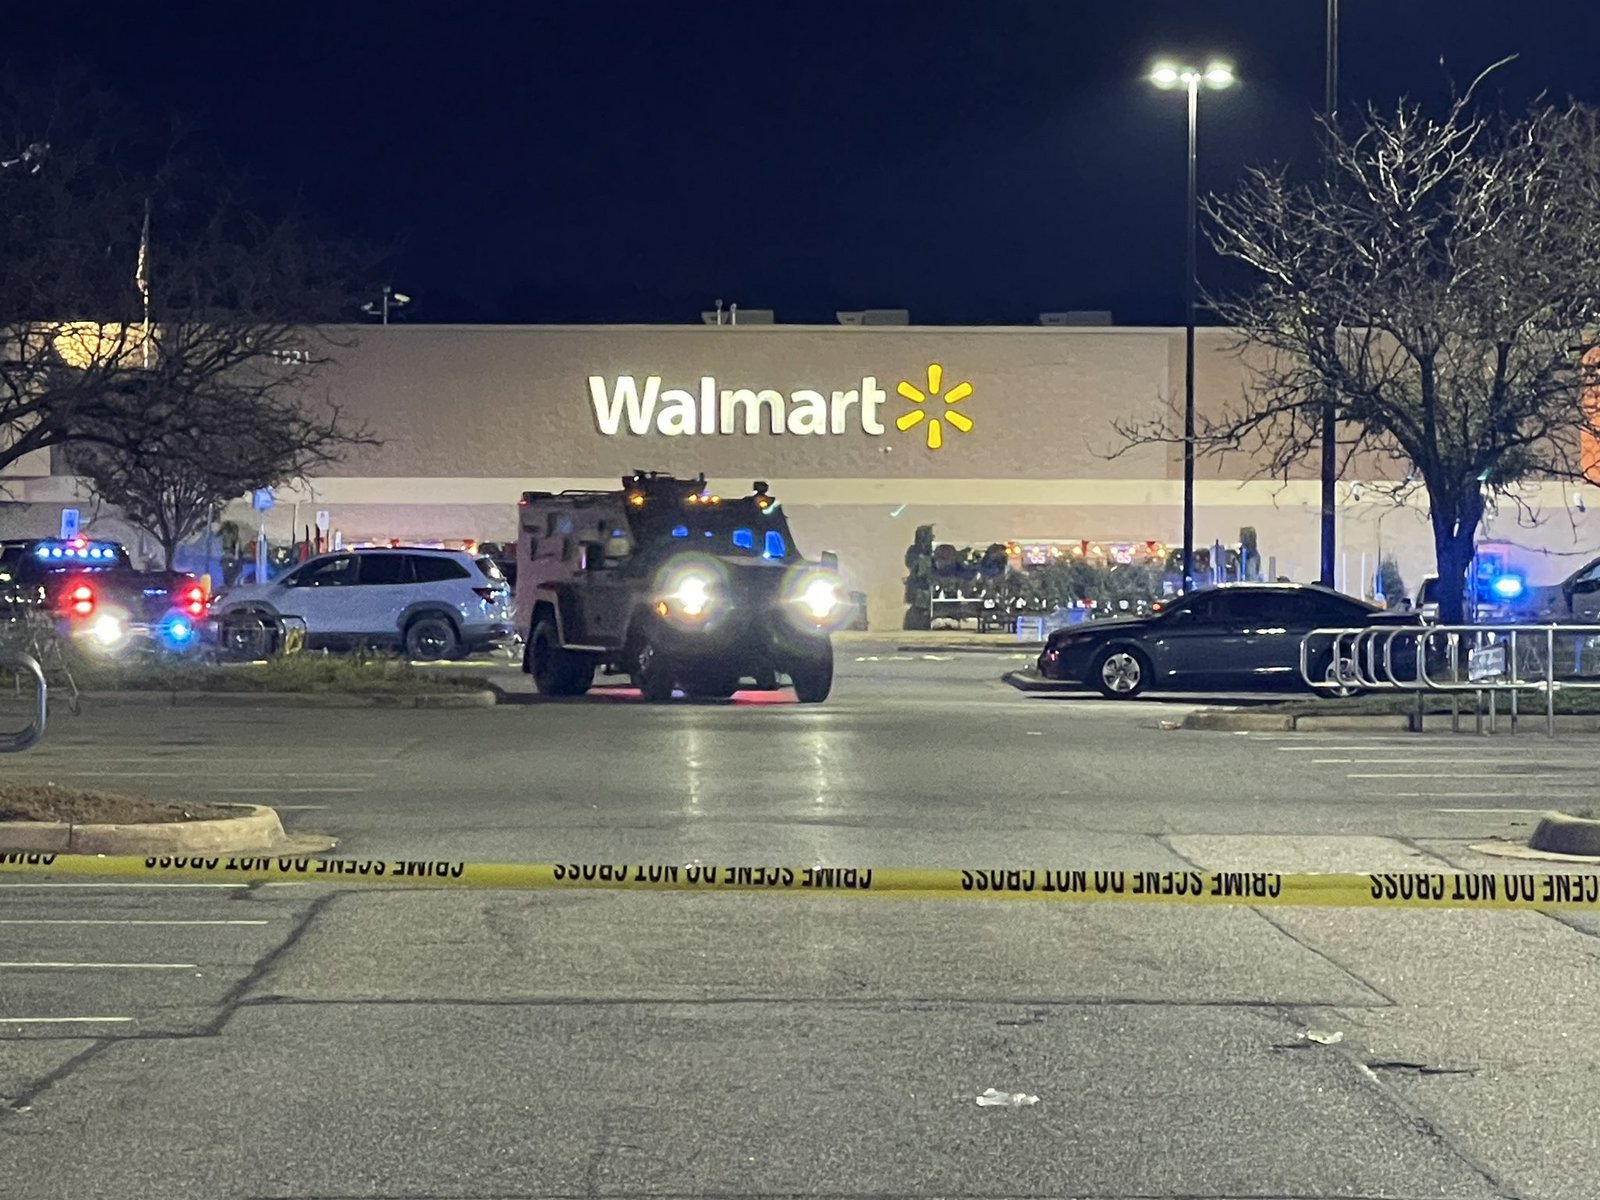 Μακελειό στη Βιρτζίνια: 10 νεκροί από πυροβολισμούς σε κατάστημα της αλυσίδας Walmart – Πιθανότατα  ο διευθυντής ο δράστης